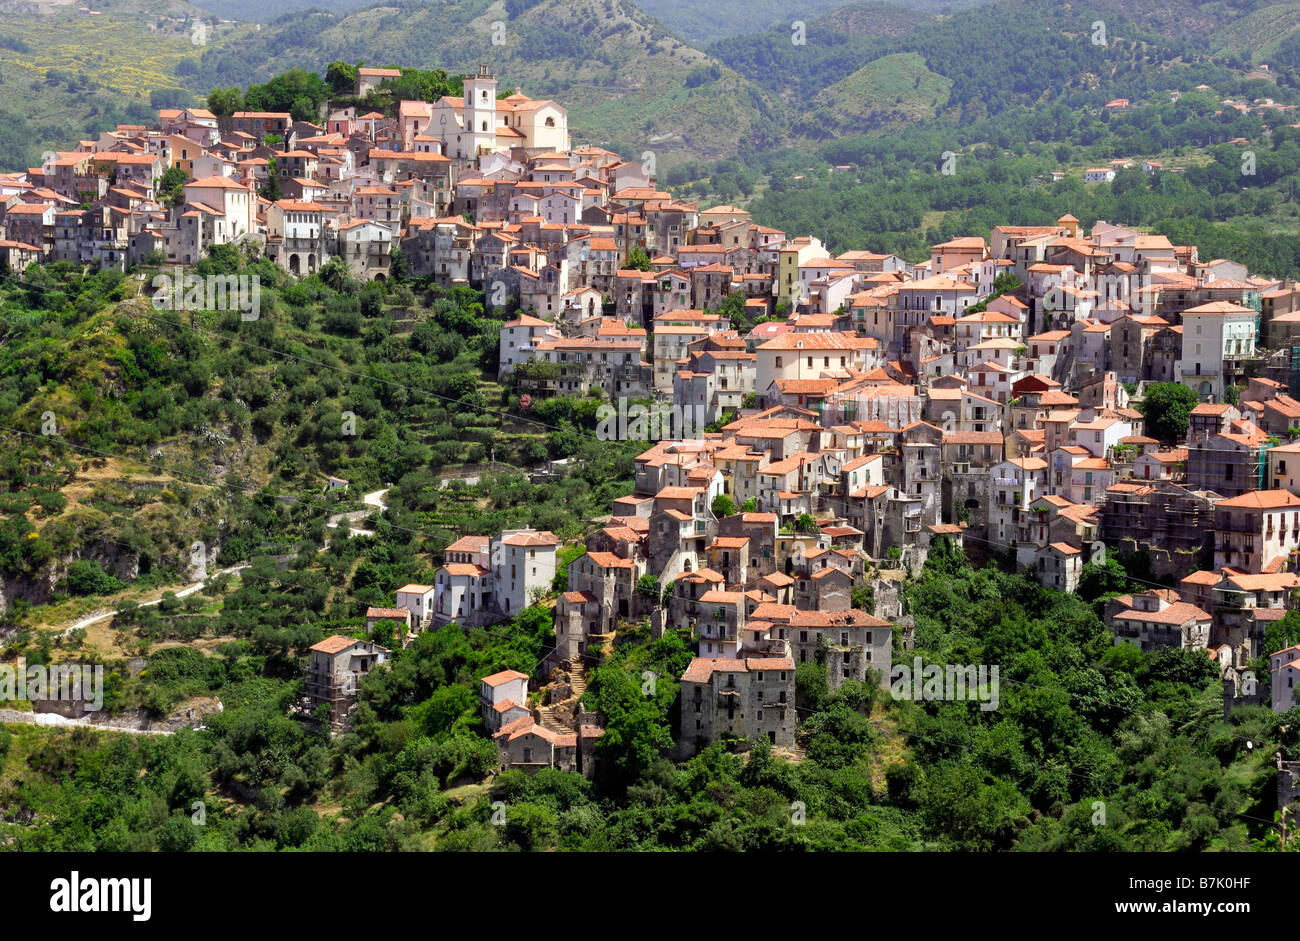 Rivello, dans le sud de l'Apennin, province de Potenza, région de Basilicate, dans le sud de l'Italie. Endommagés par 1980 tremblement de terre. Population : 3 000 Banque D'Images